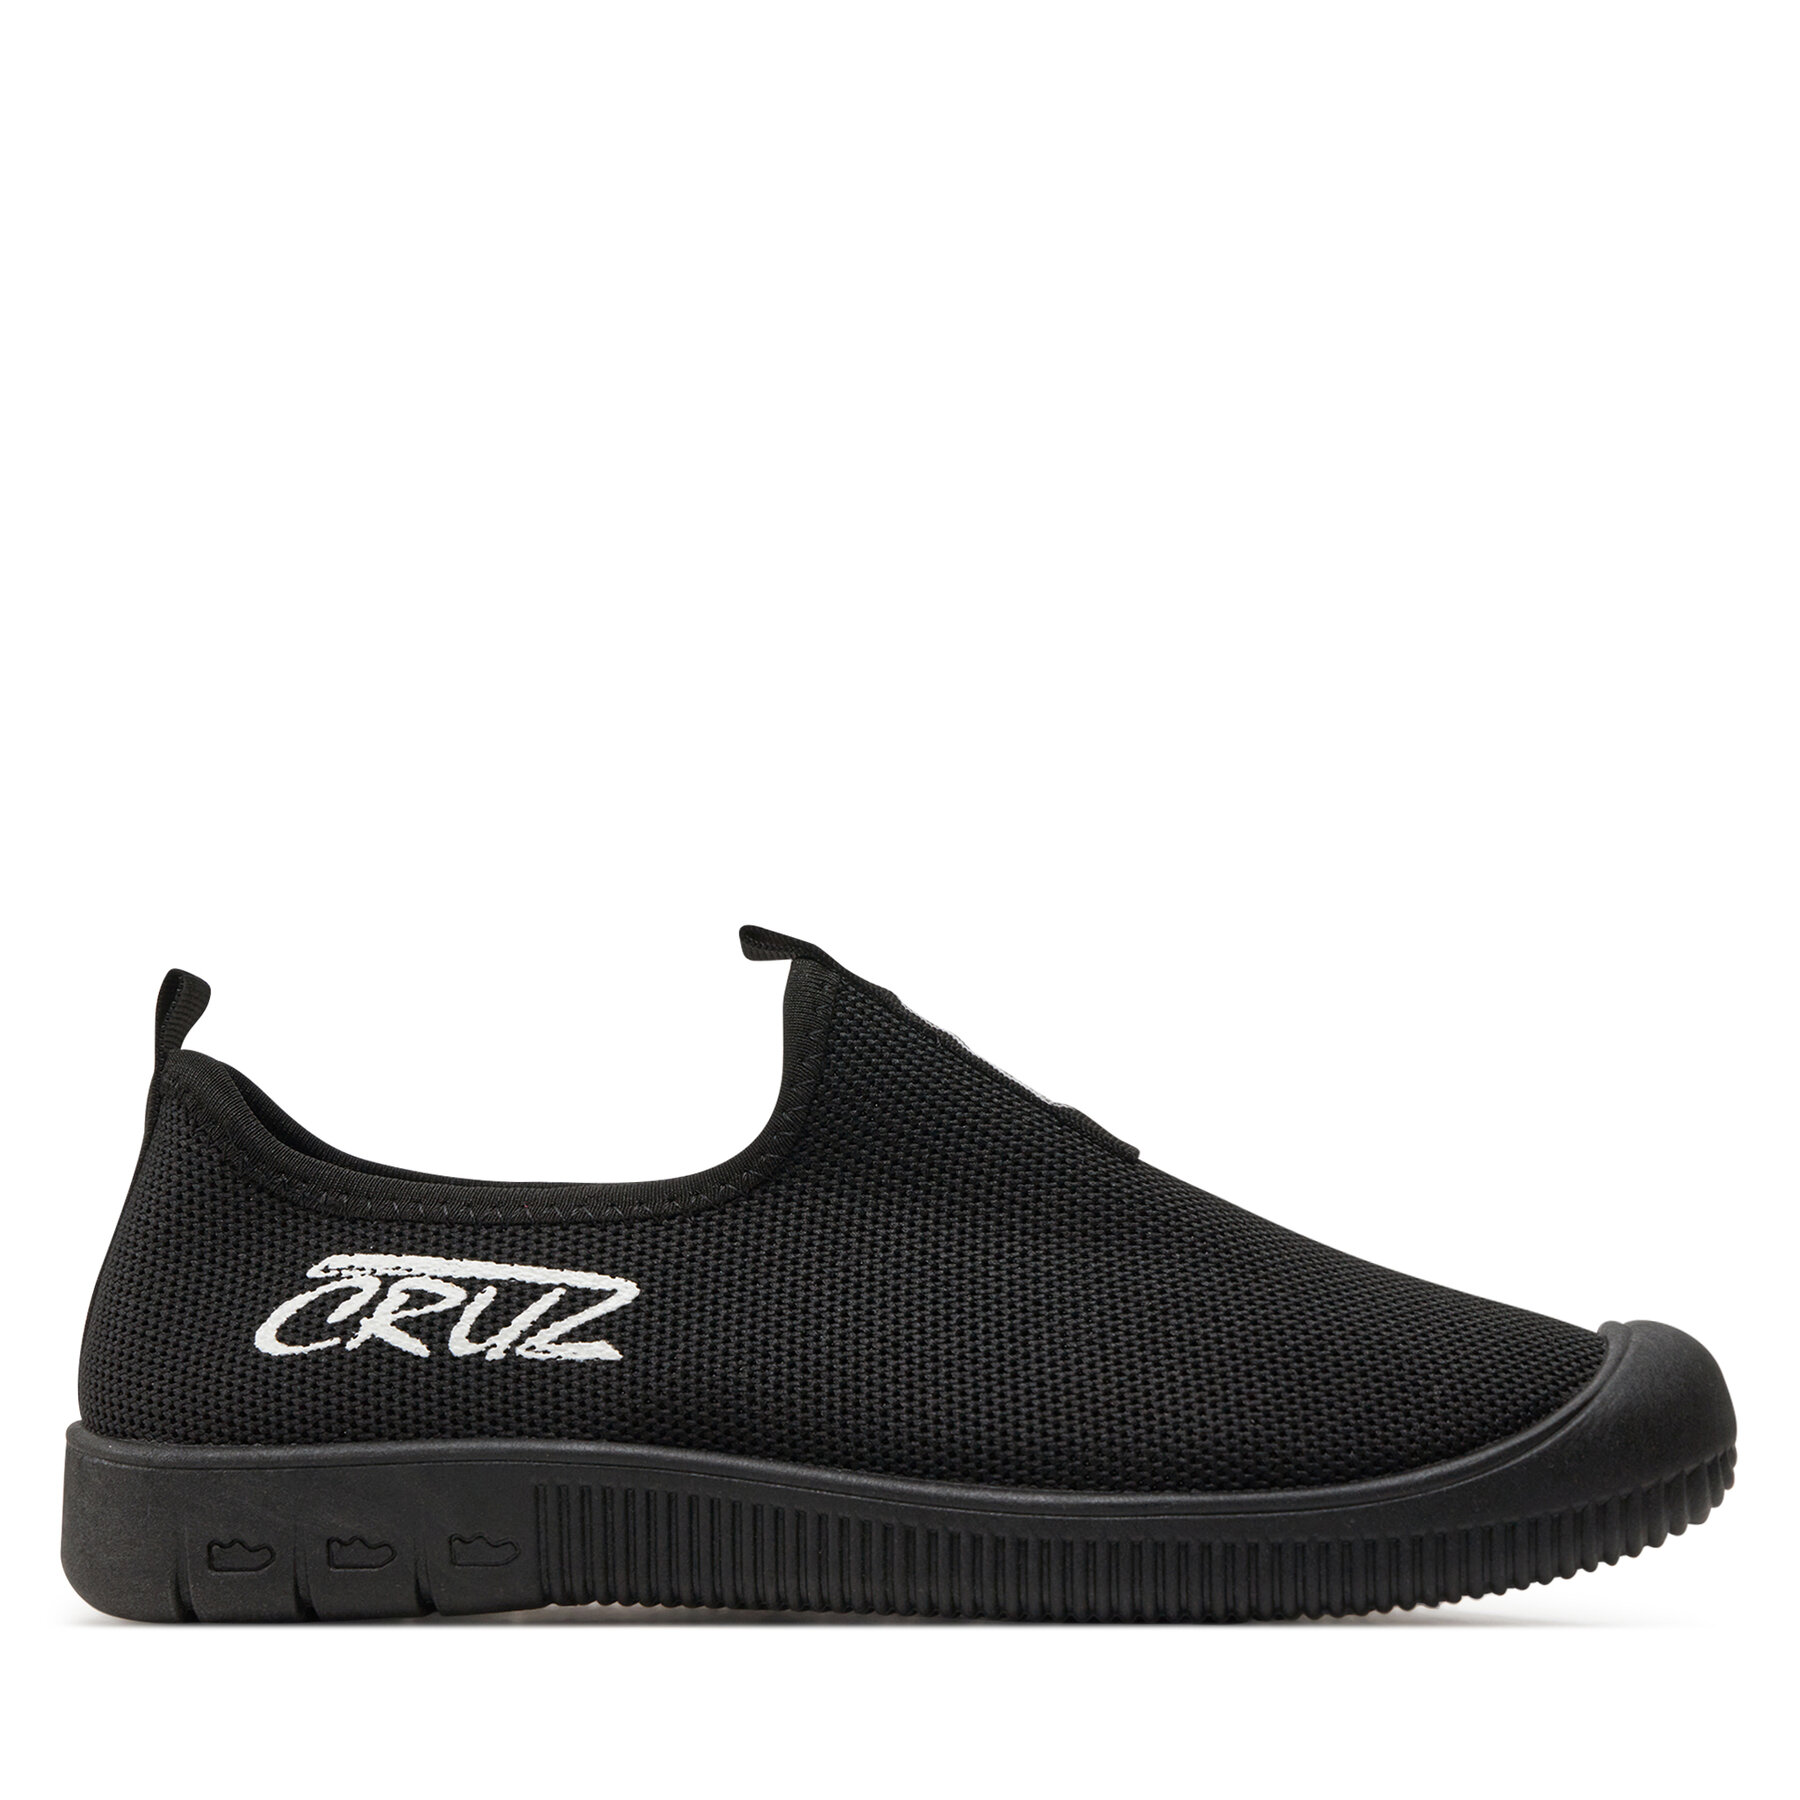 Schuhe CRUZ Kerda Uni Water Shoe CR192041 Black 1001 von CRUZ